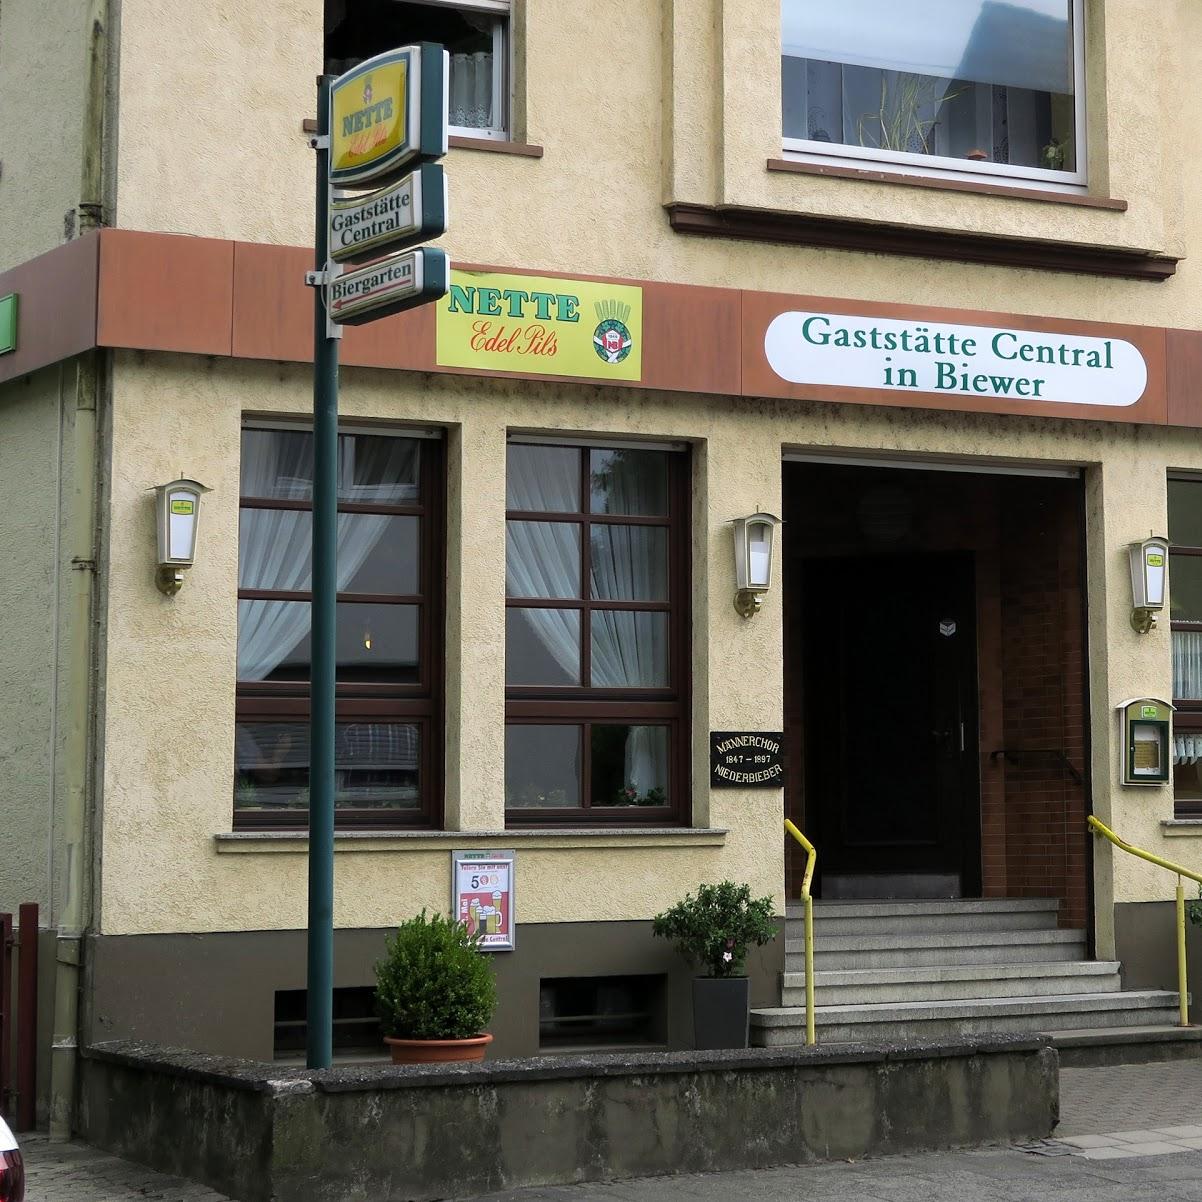 Restaurant "Gaststätte Central in Biewer" in  Neuwied